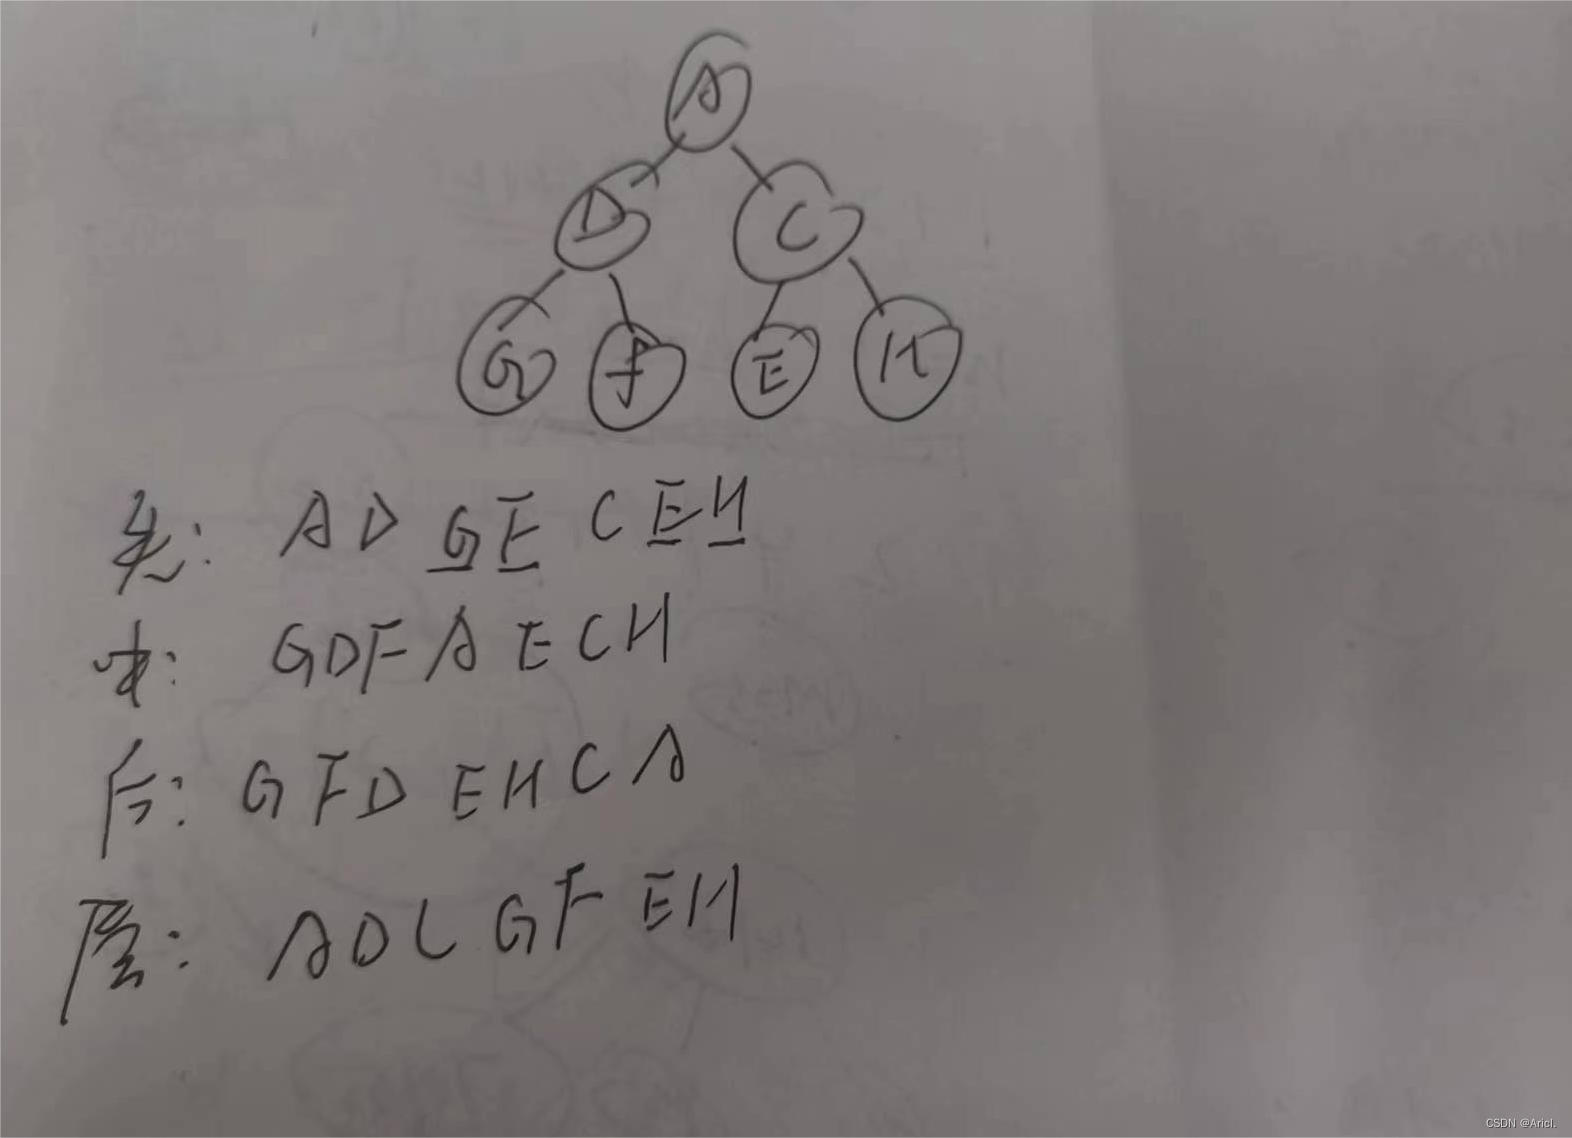 【考研数据结构代码题6】构建二叉树及四大遍历（先中后层）